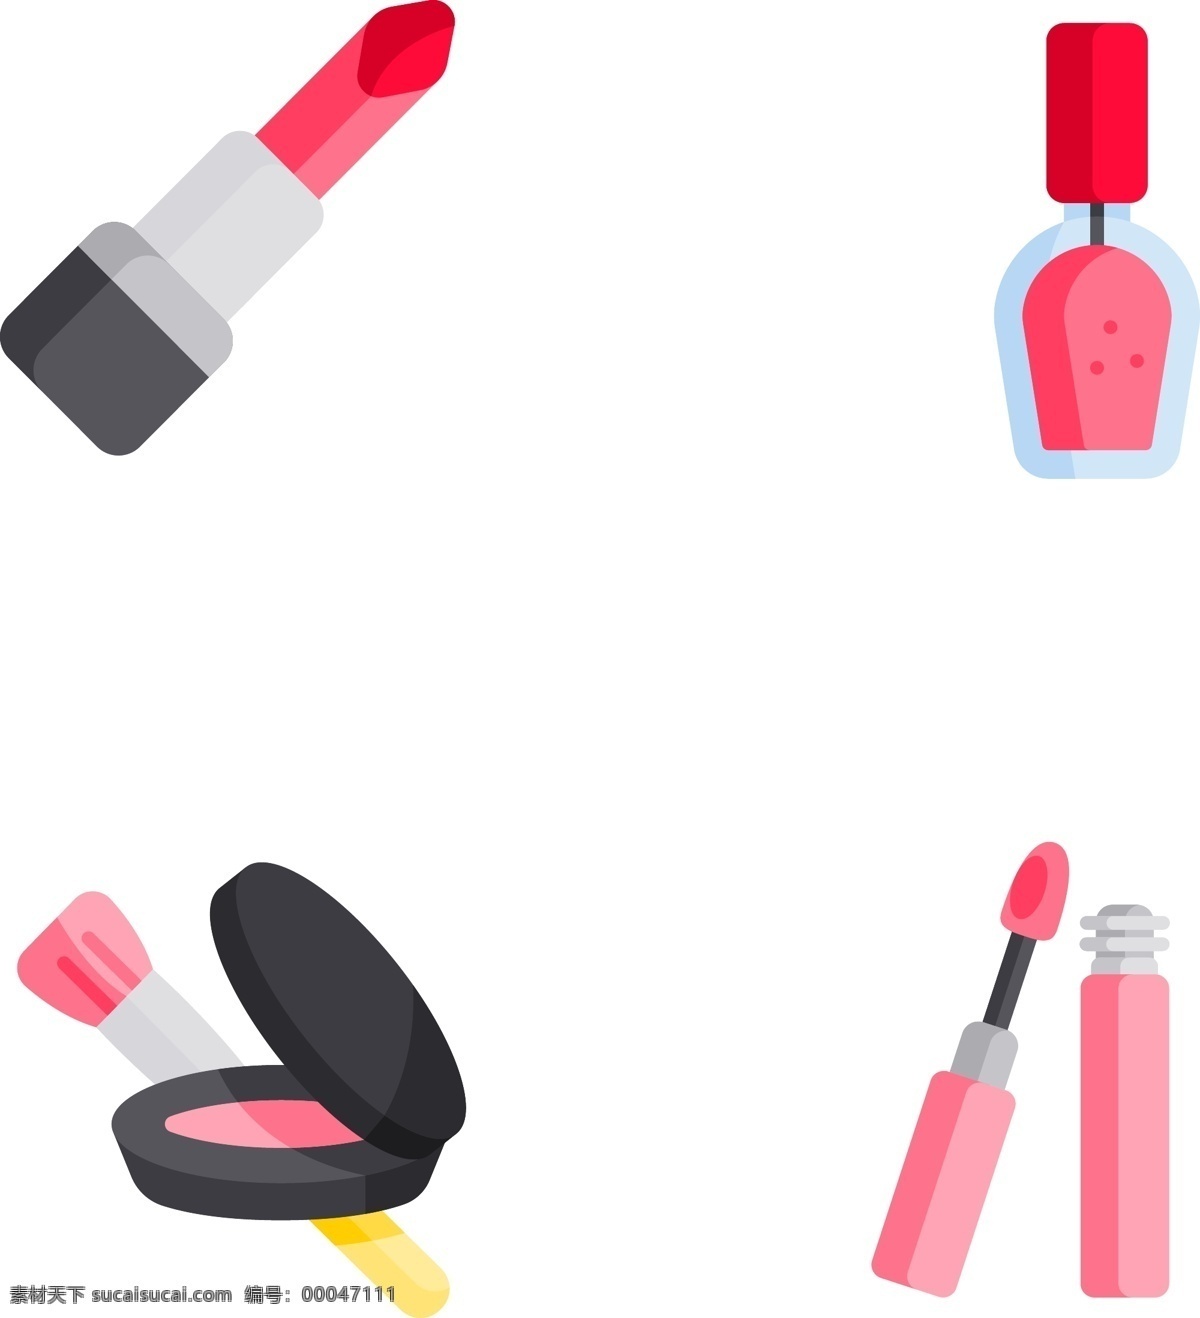 女人 化妆品 插画 女人用品 女士用品 口红 指甲油 粉底 眼睫毛膏 免抠 png格式 可分开使用